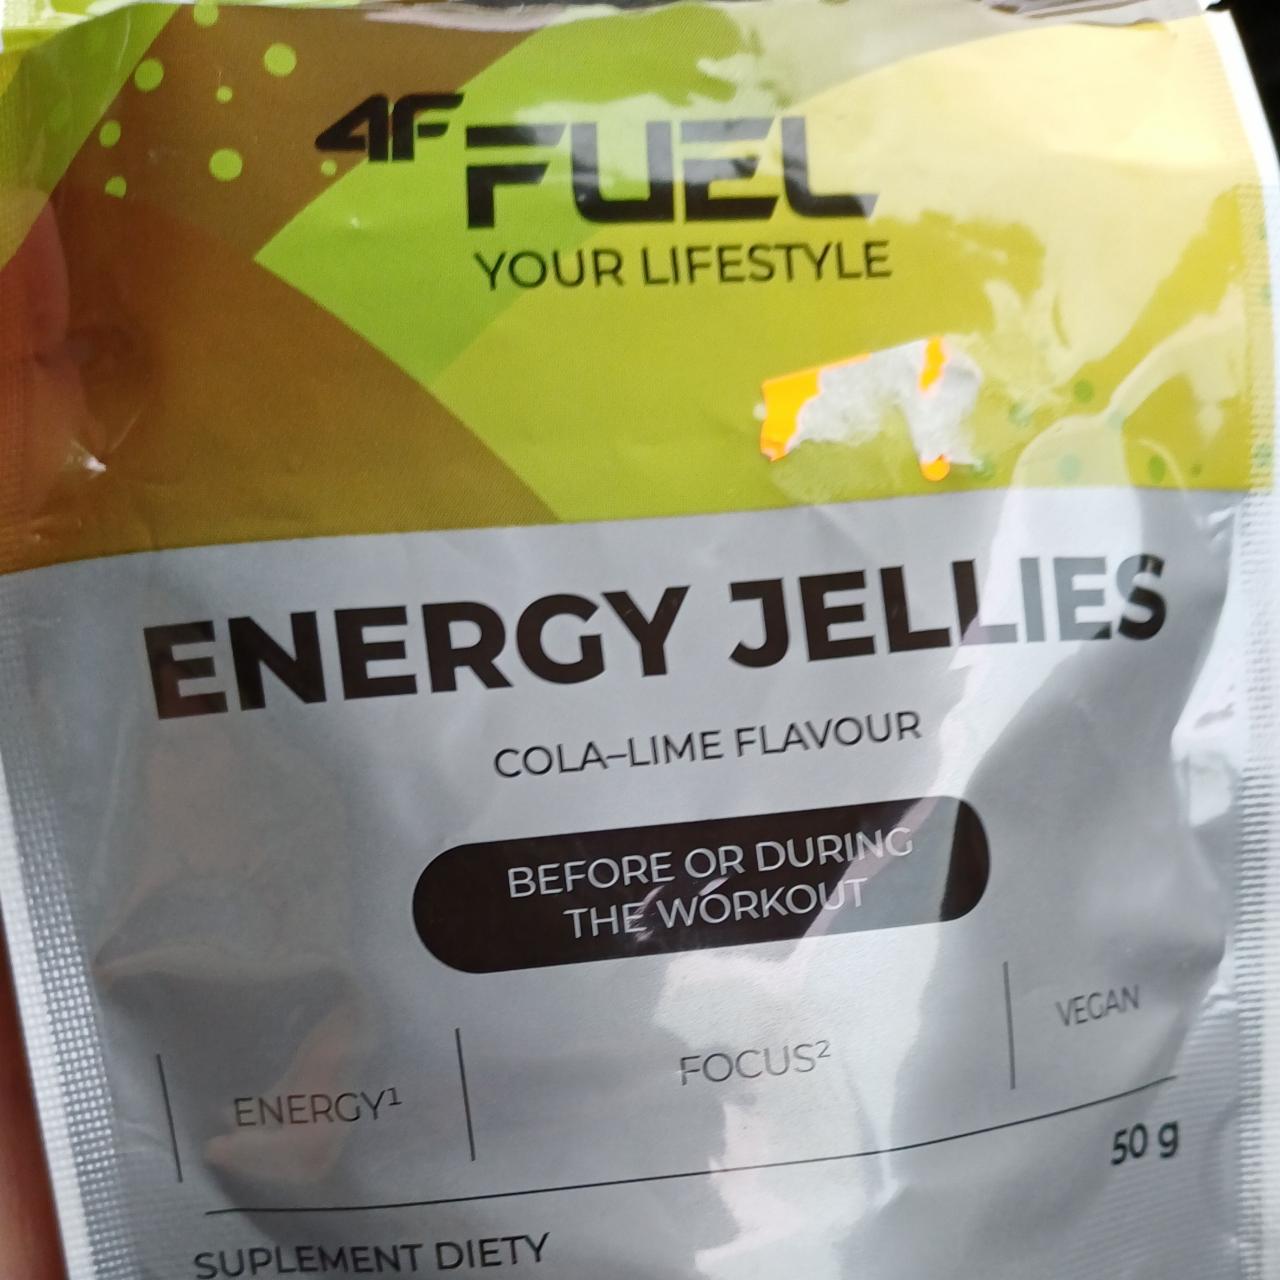 Zdjęcia - Energy jellies 4F fuel